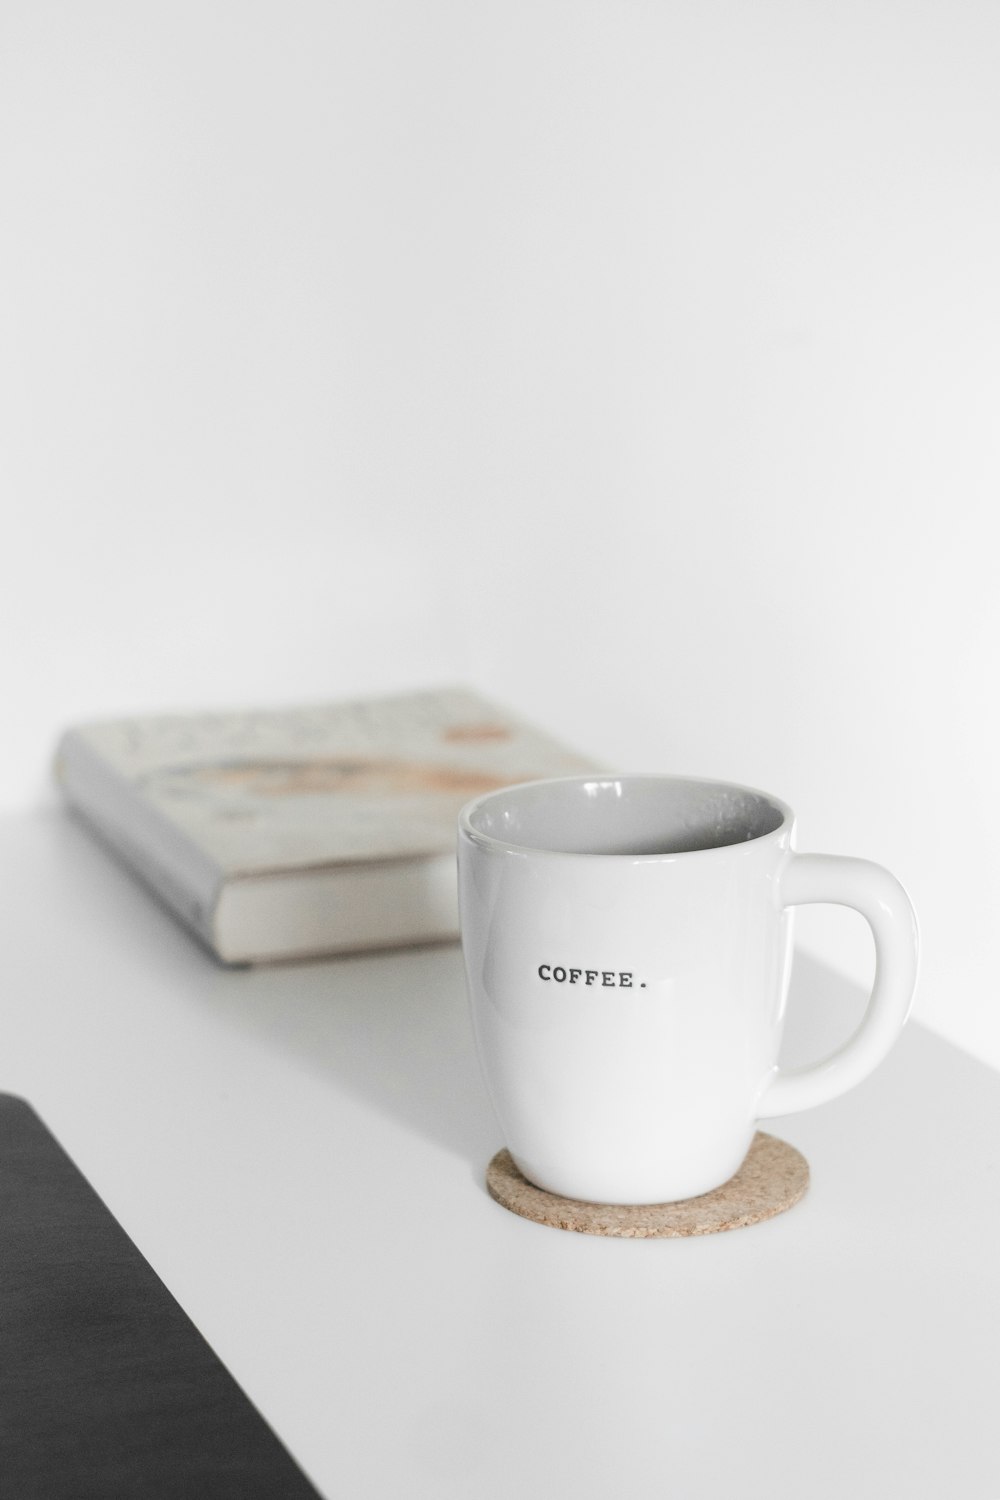 white ceramic mug beside brown wooden board on white table